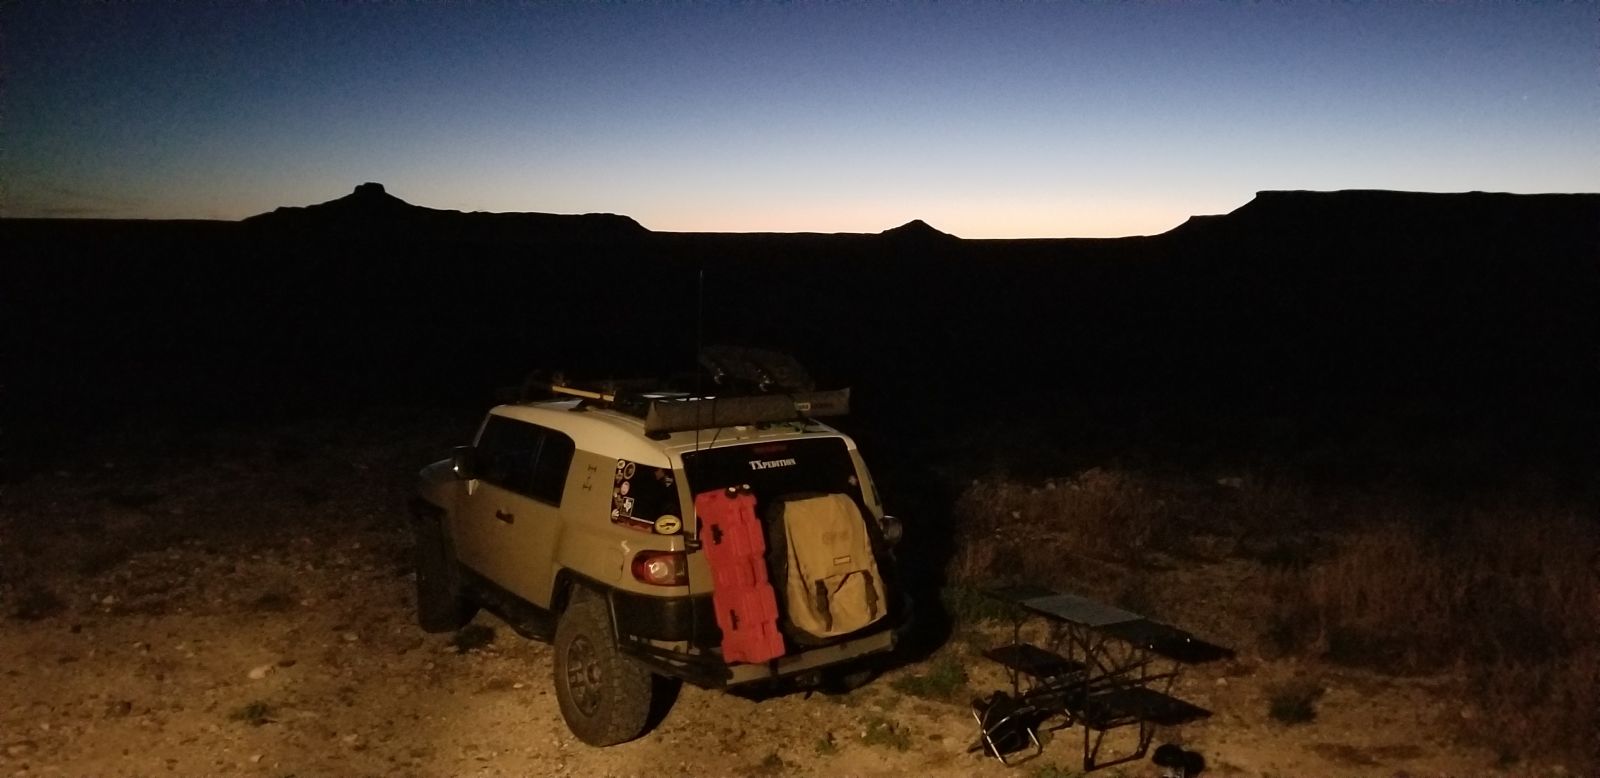 Los Alamos Ranch at sunrise.